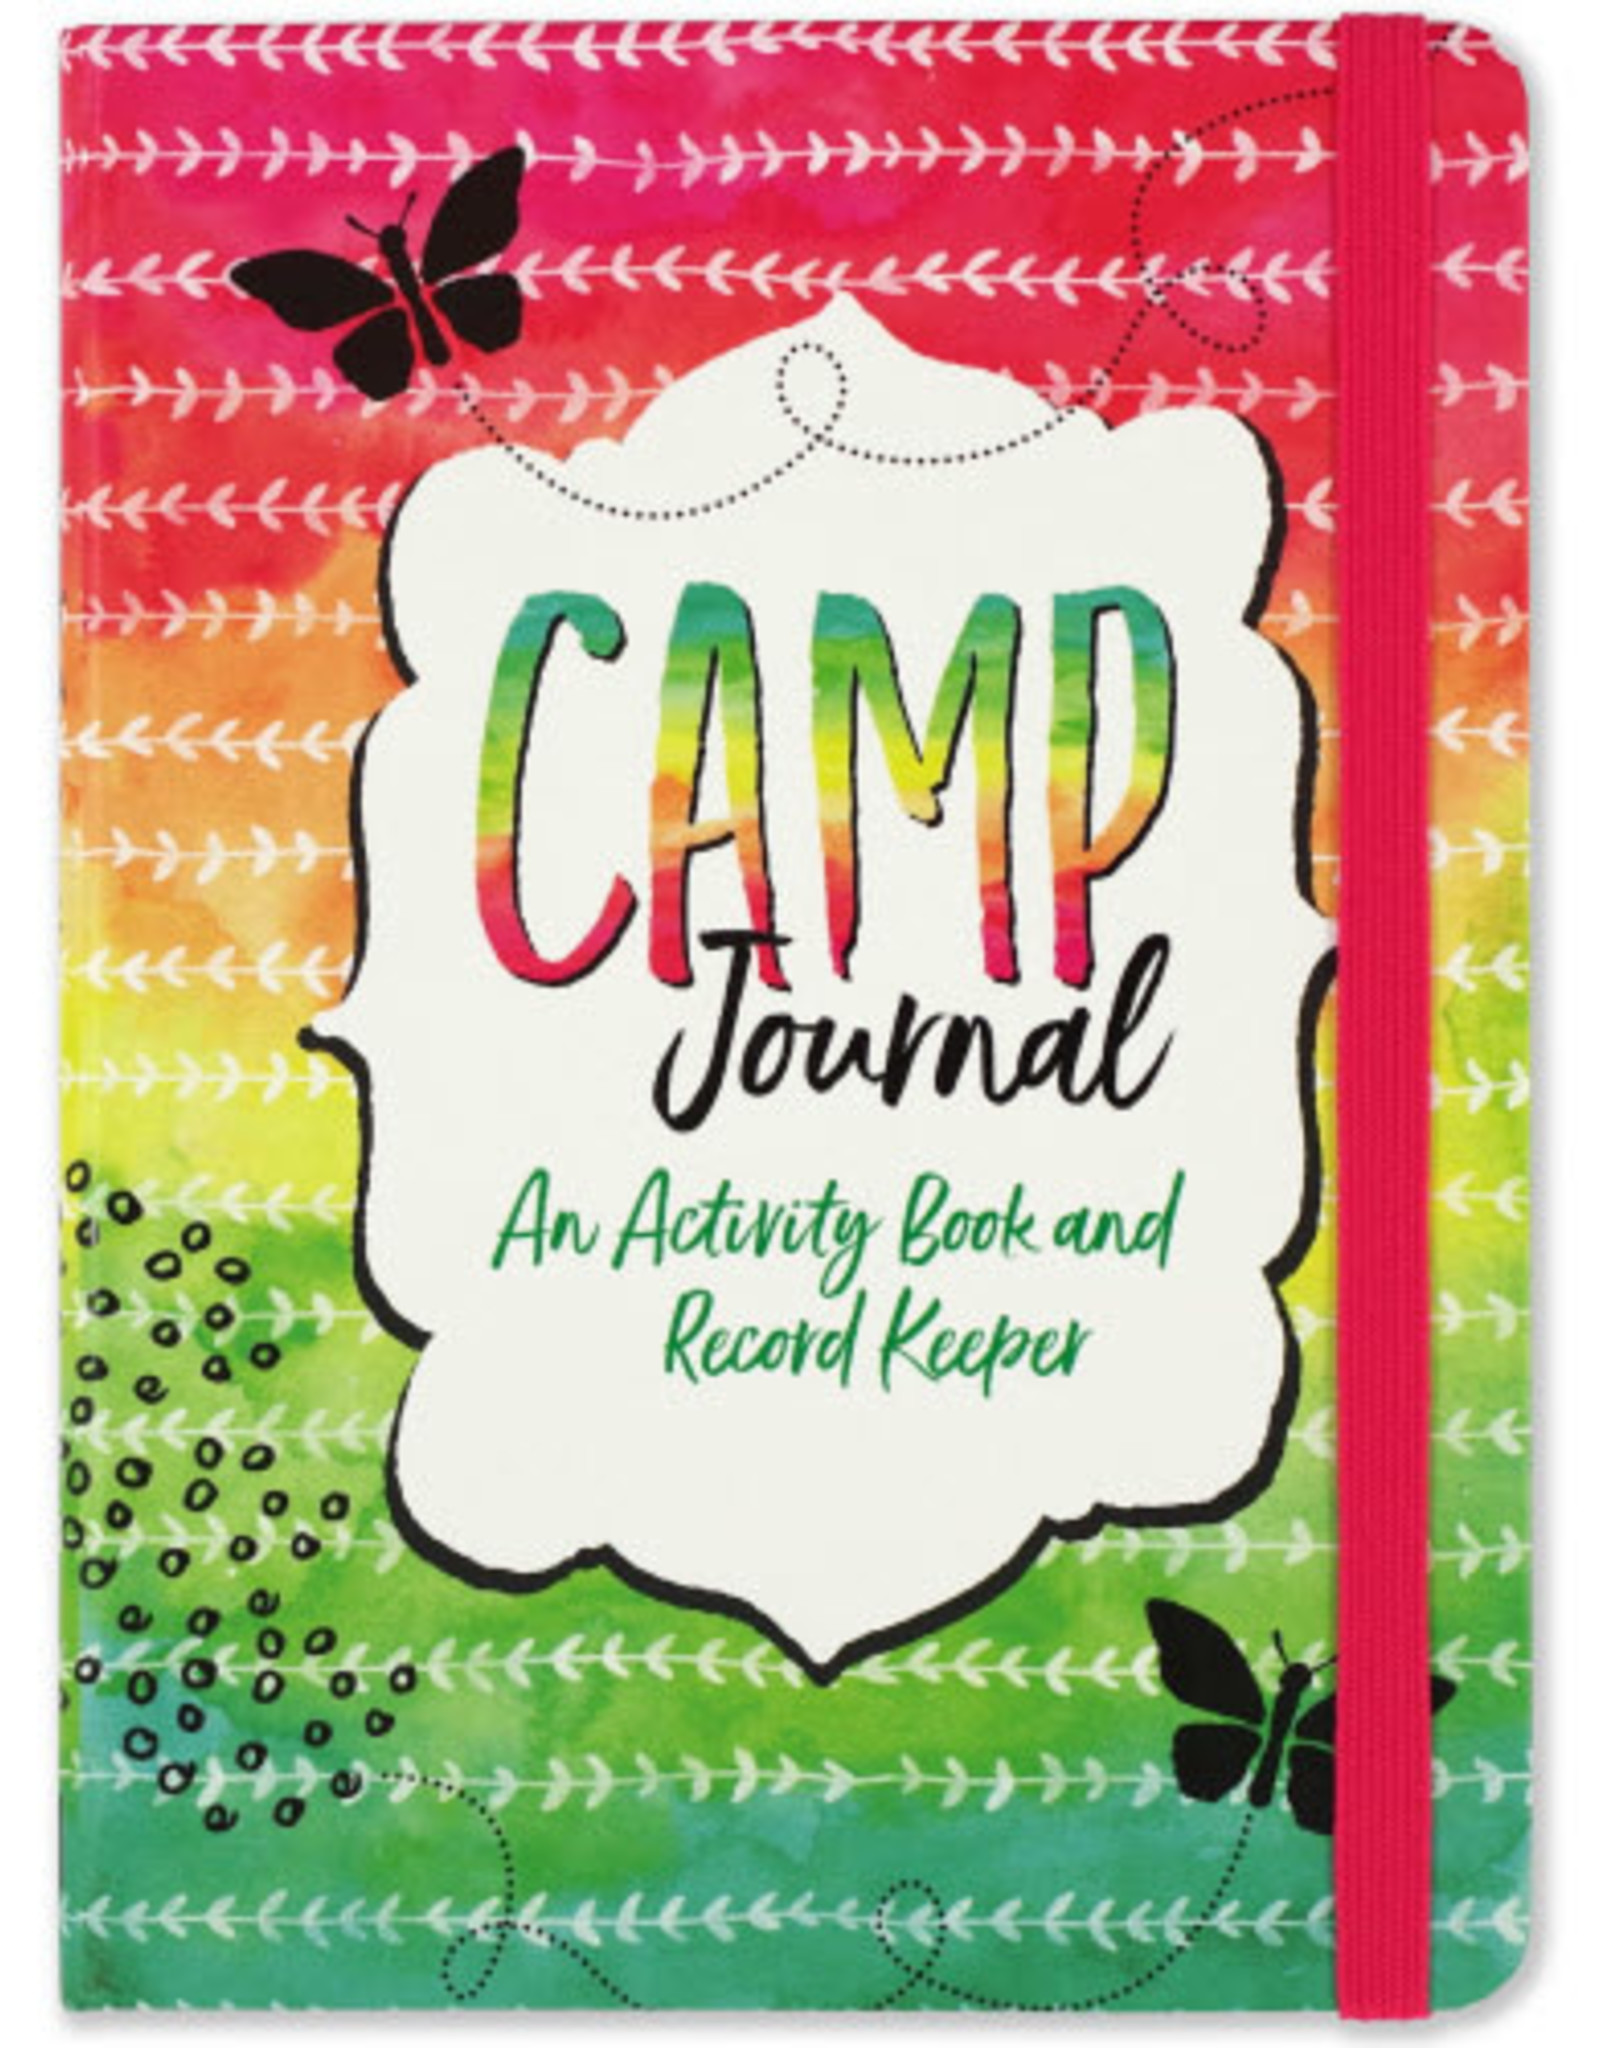 Peter Pauper Press Camp Journal 2nd edition